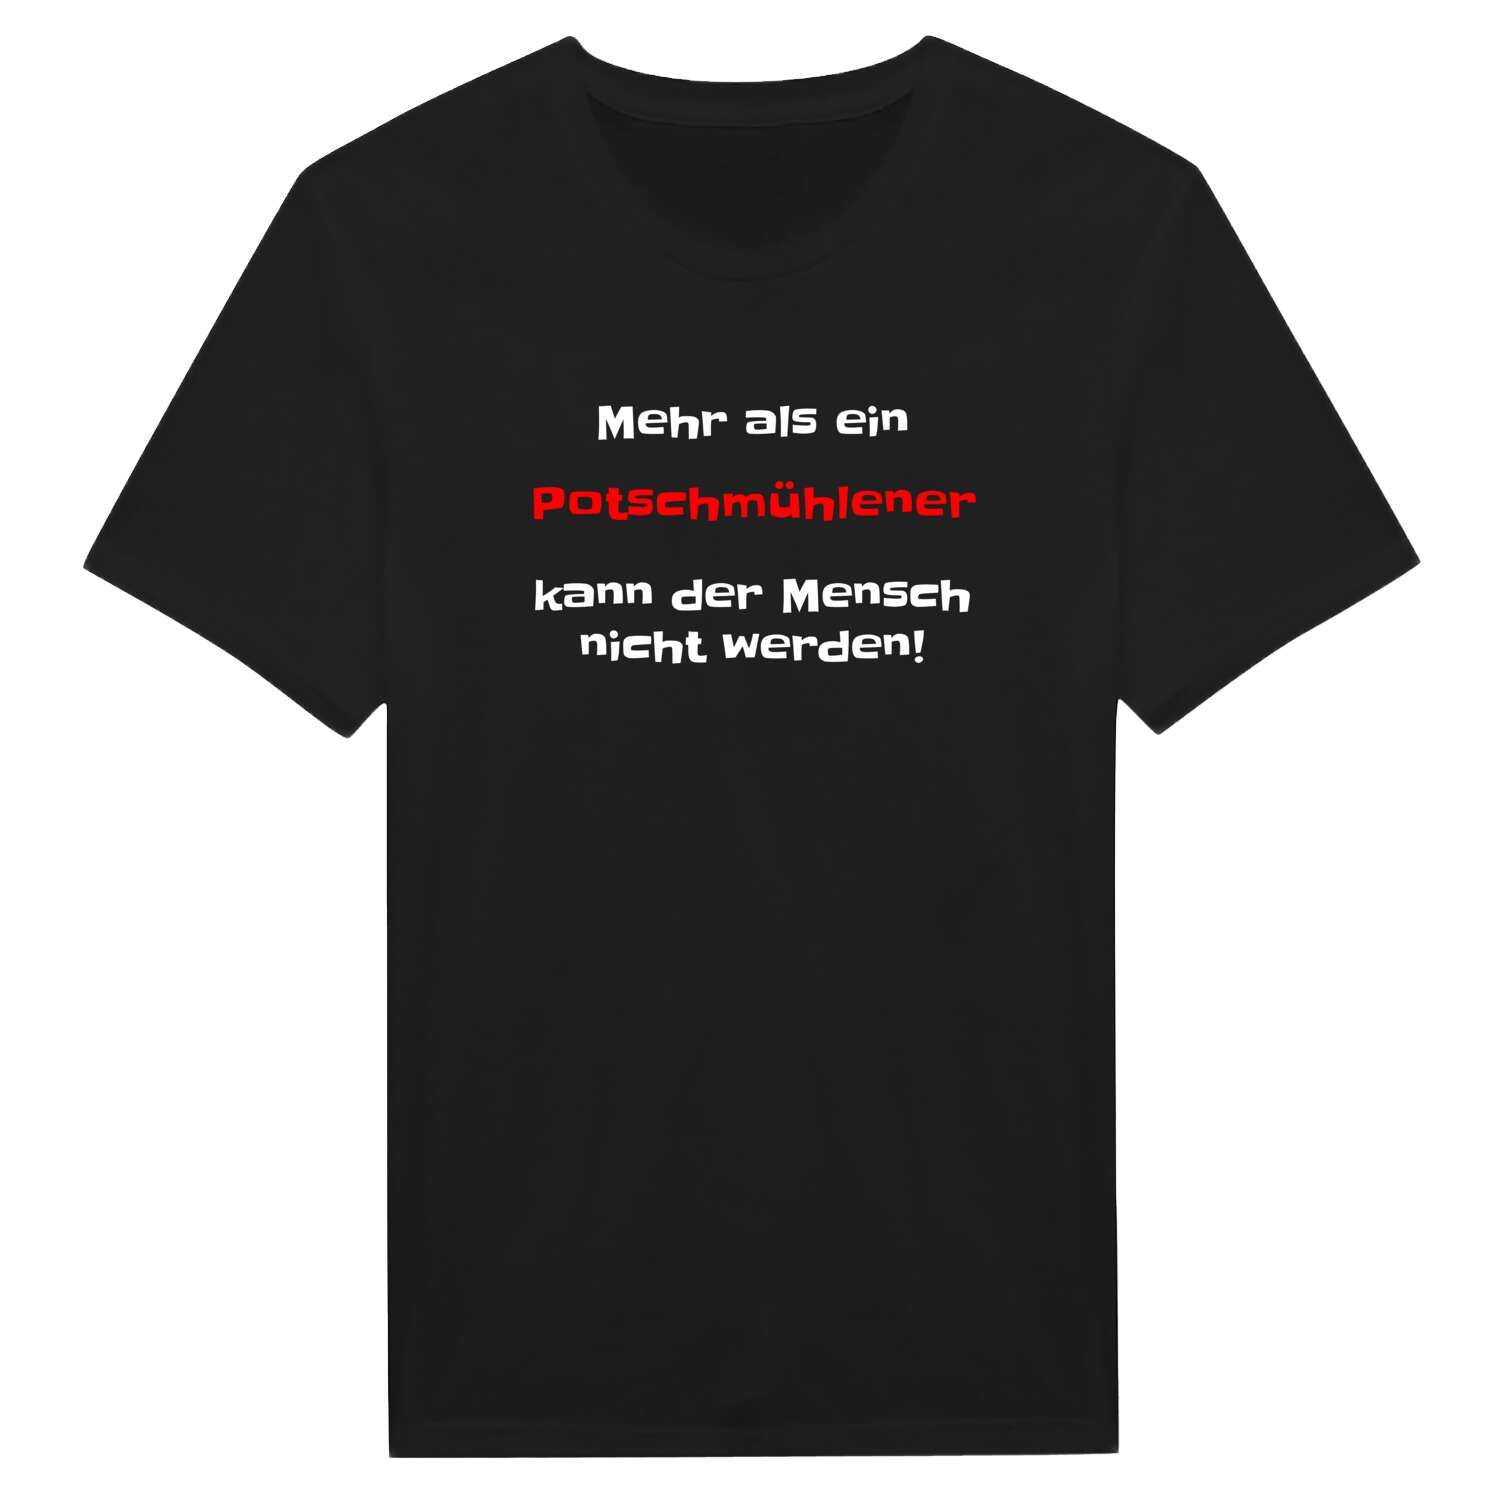 Potschmühle T-Shirt »Mehr als ein«